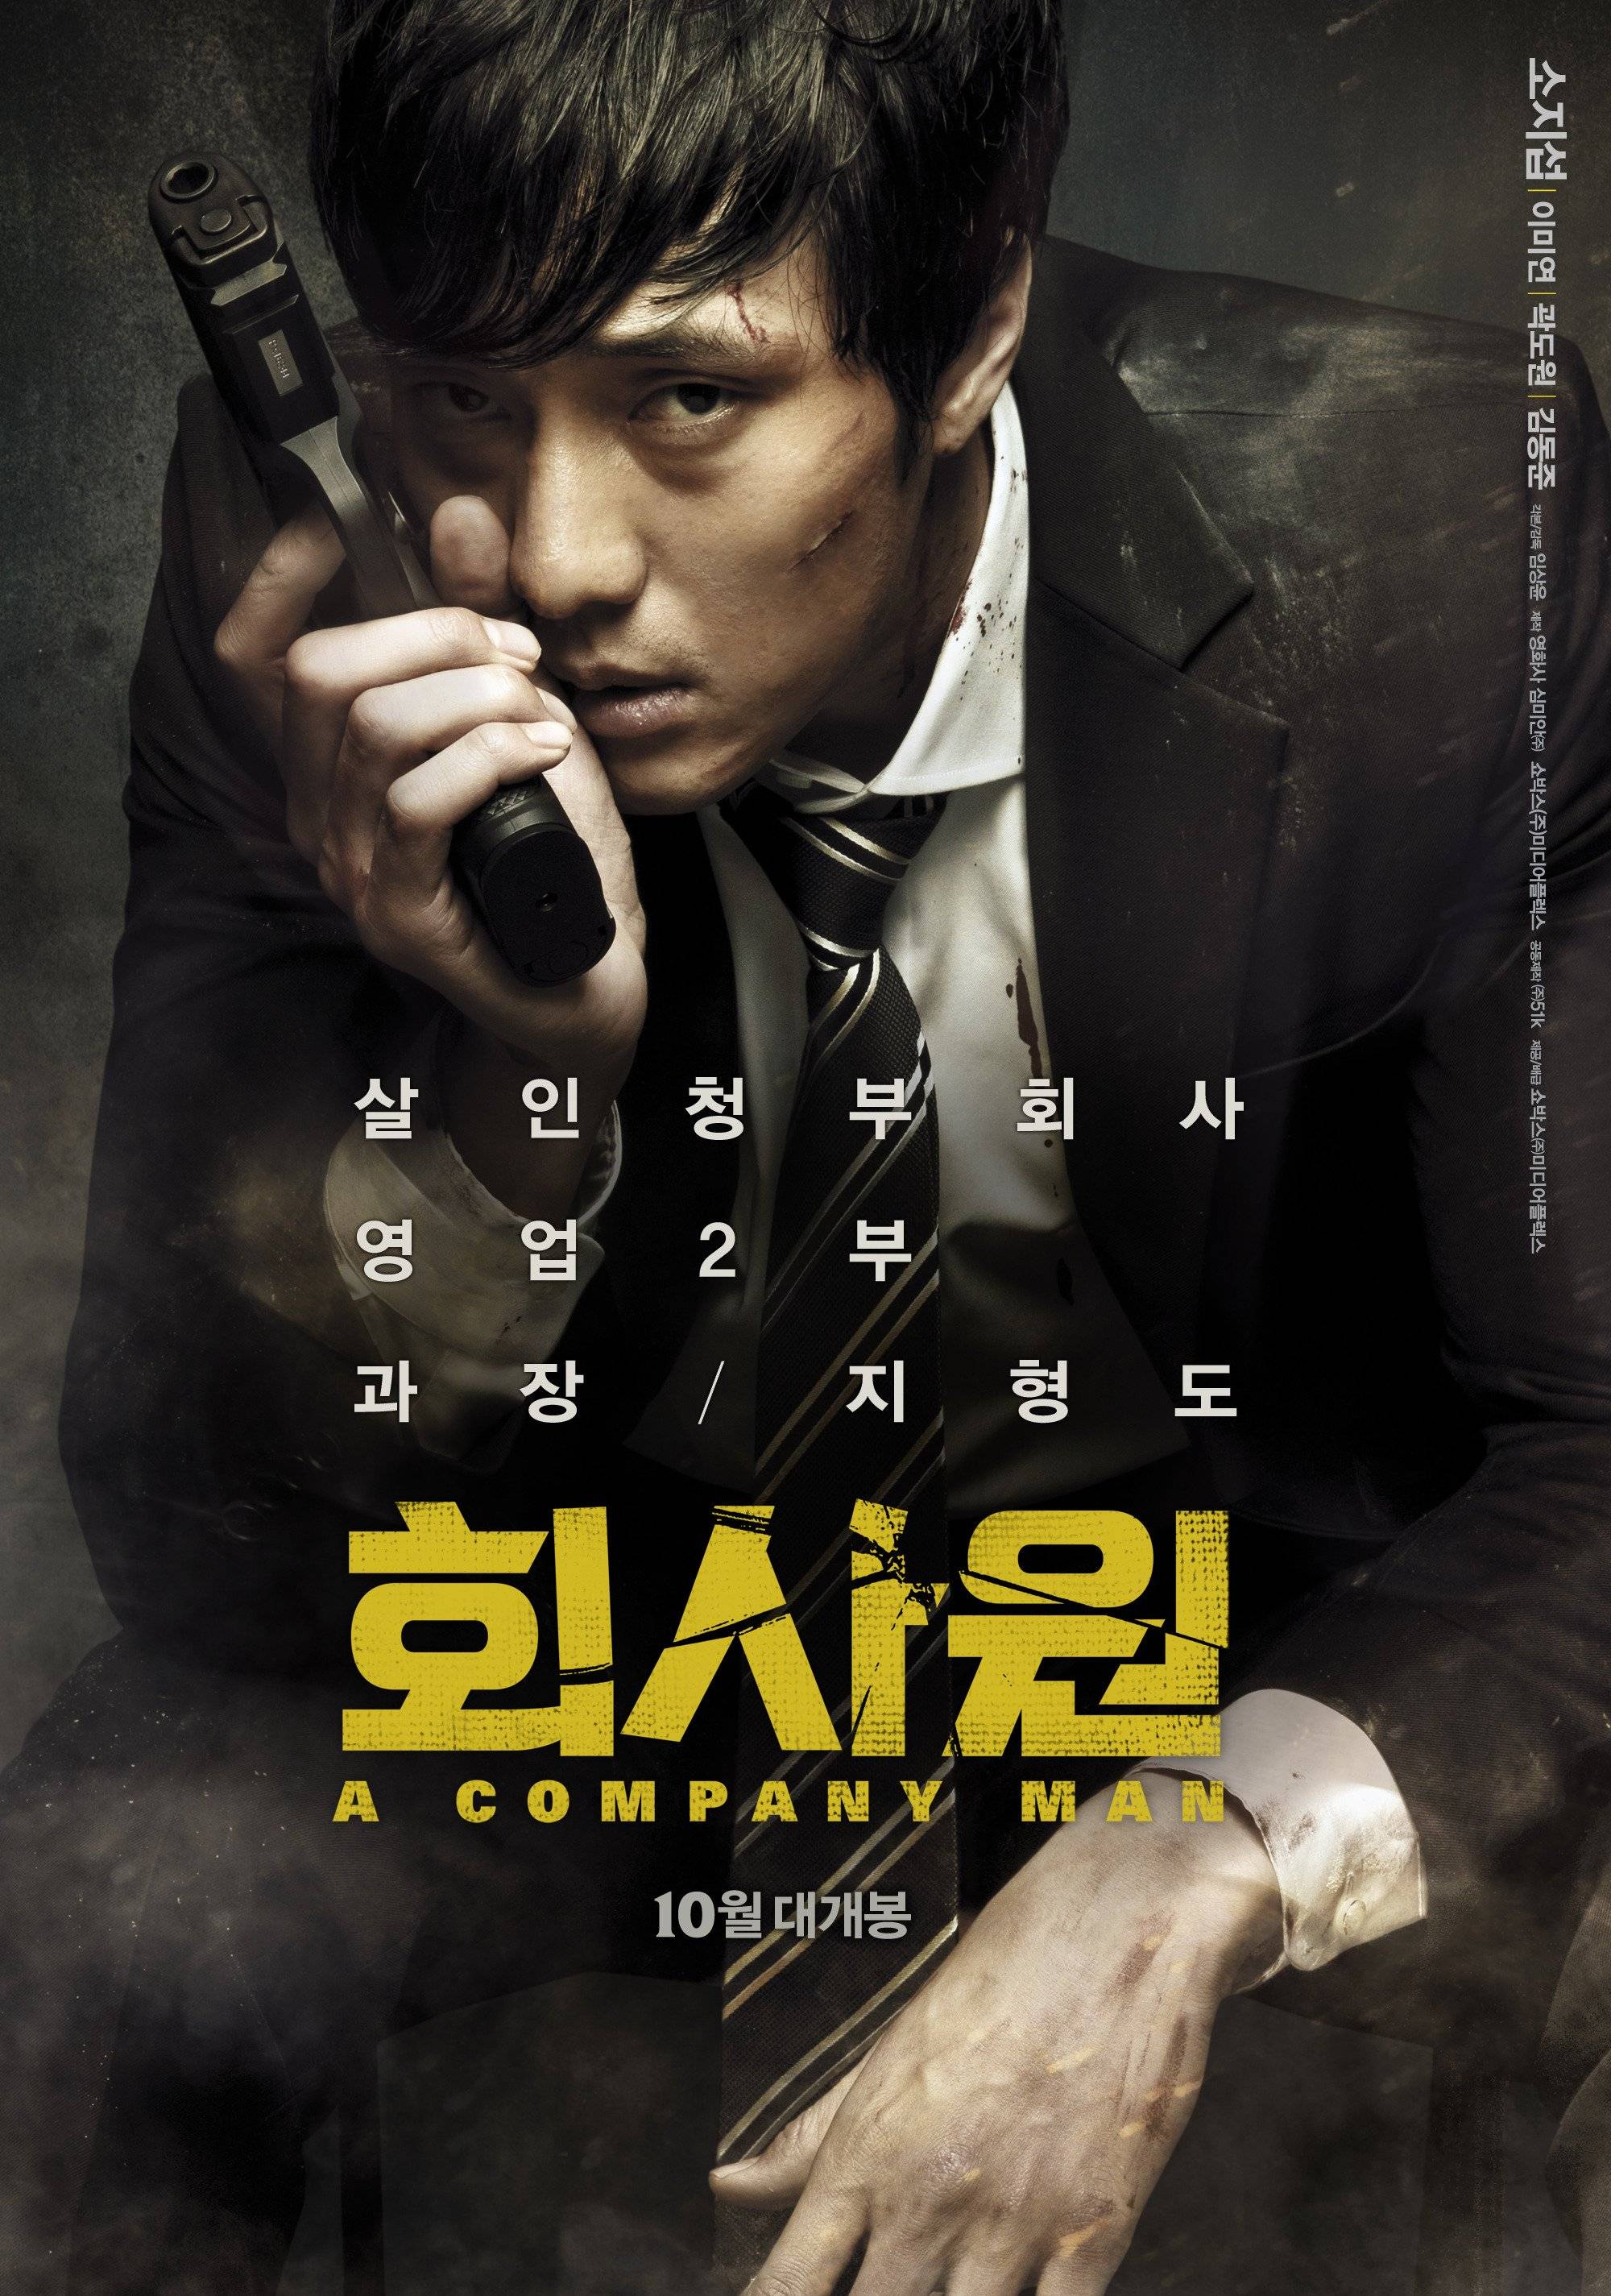 fullsizephoto254643 Streaming Review: A Company Man (2012) Korea